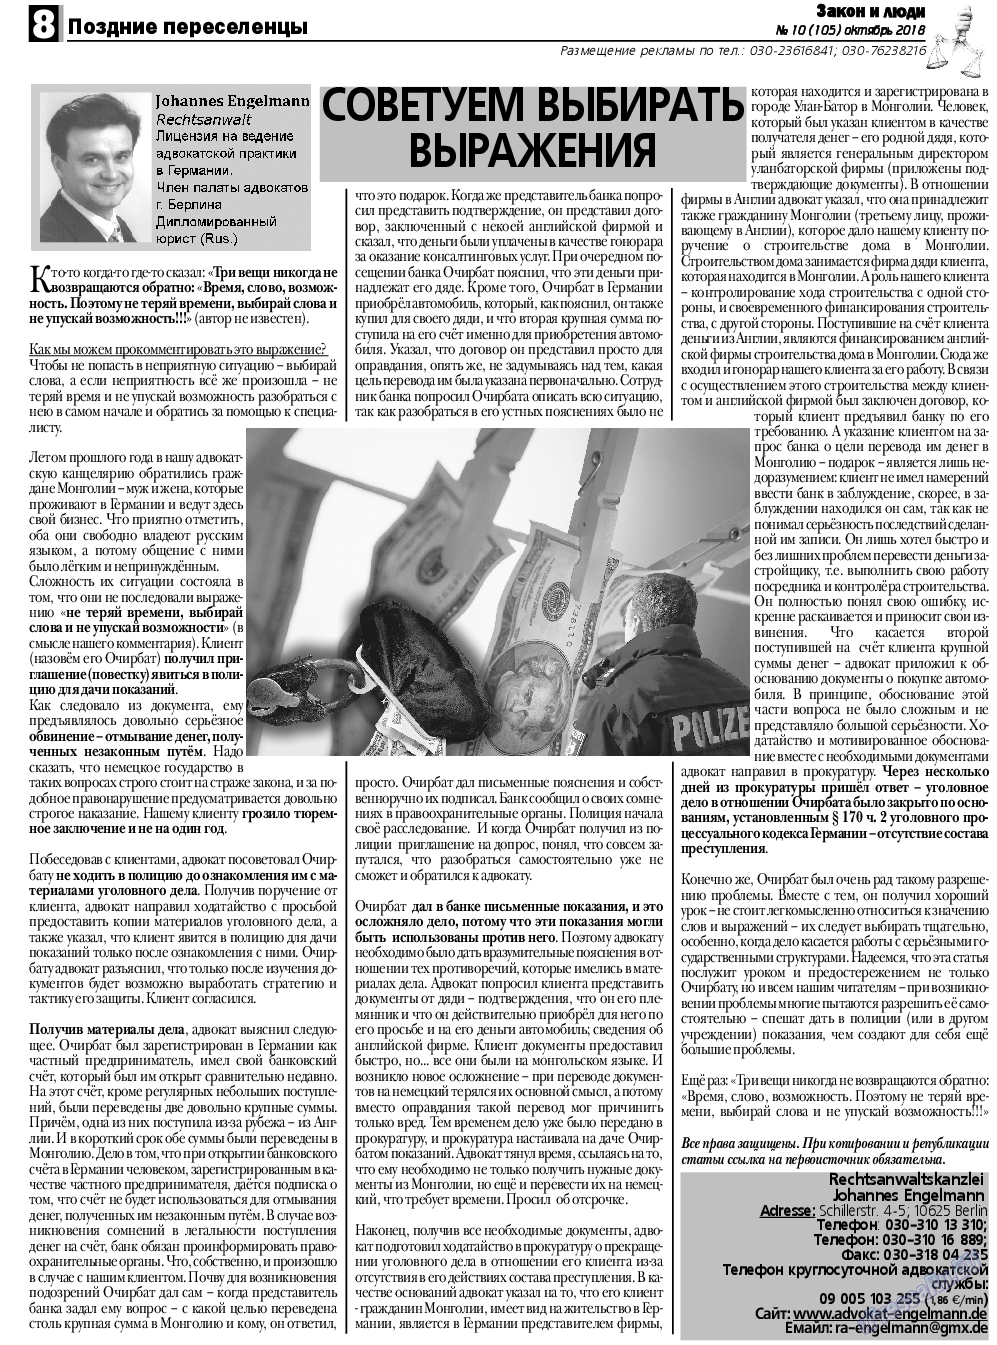 Закон и люди, газета. 2018 №10 стр.8